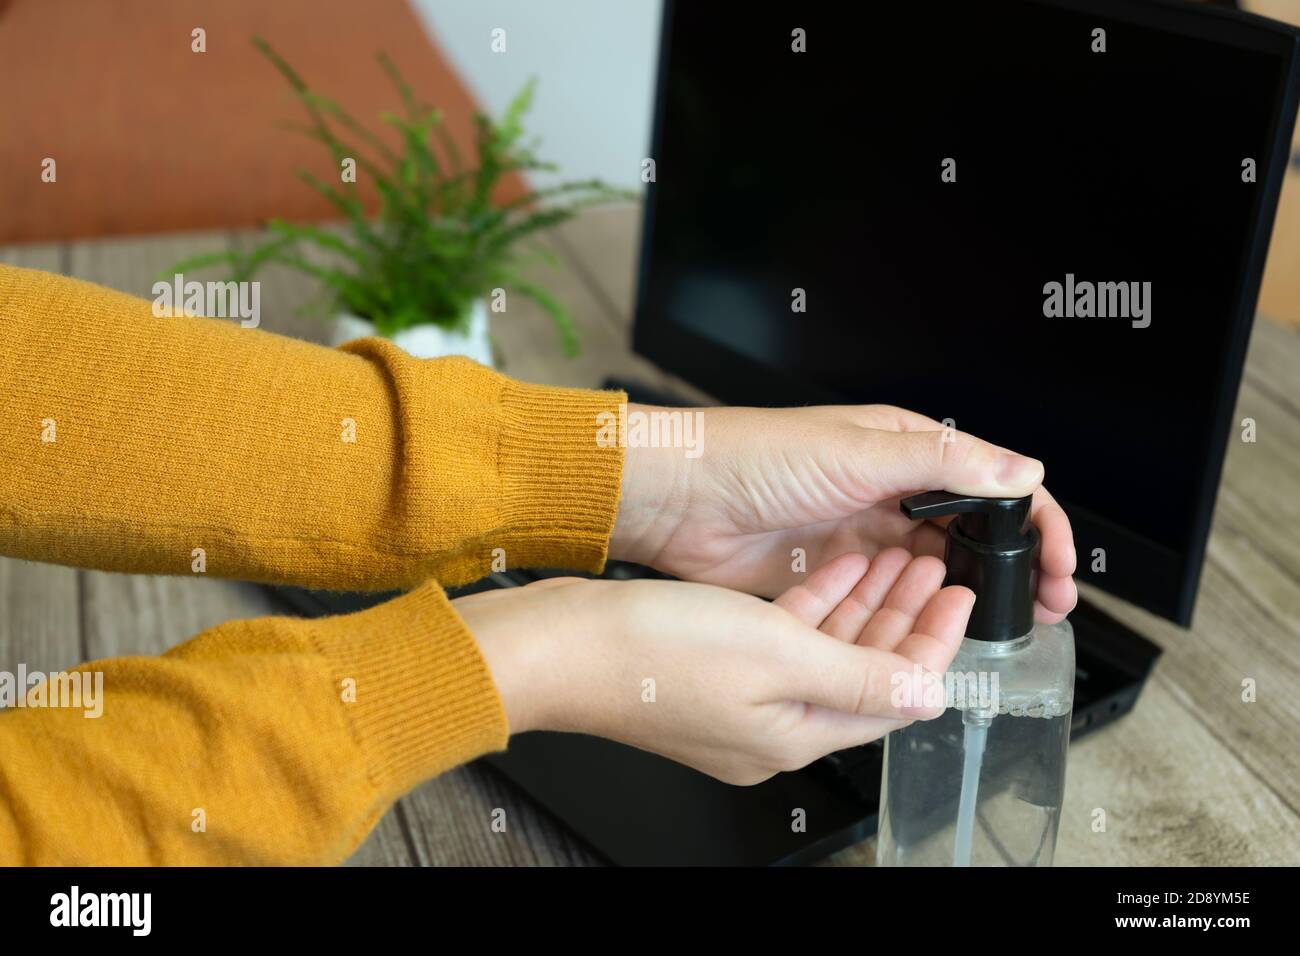 Femme appliquant de l'assainisseur pour les mains ou de l'hydrogel désinfectant les mains contre les germes, le coronavirus ou le covid-19, travaillant avec un ordinateur portable à la maison ou au bureau. Banque D'Images